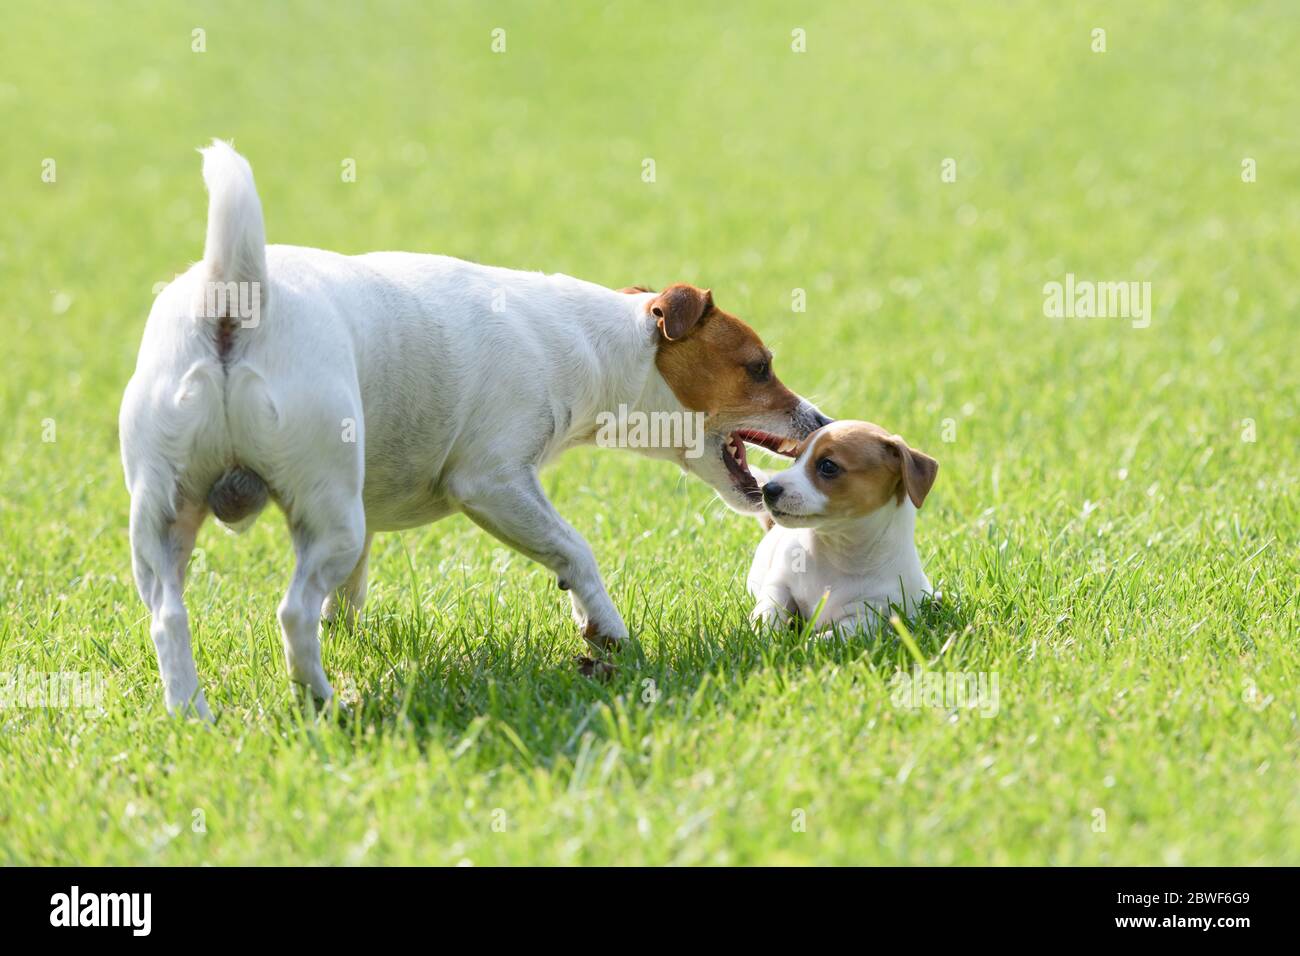 Un petit chien blanc chiot race Jack Russel Terrier avec son père sur la pelouse verte. Photographie de chiens et d'animaux de compagnie Banque D'Images